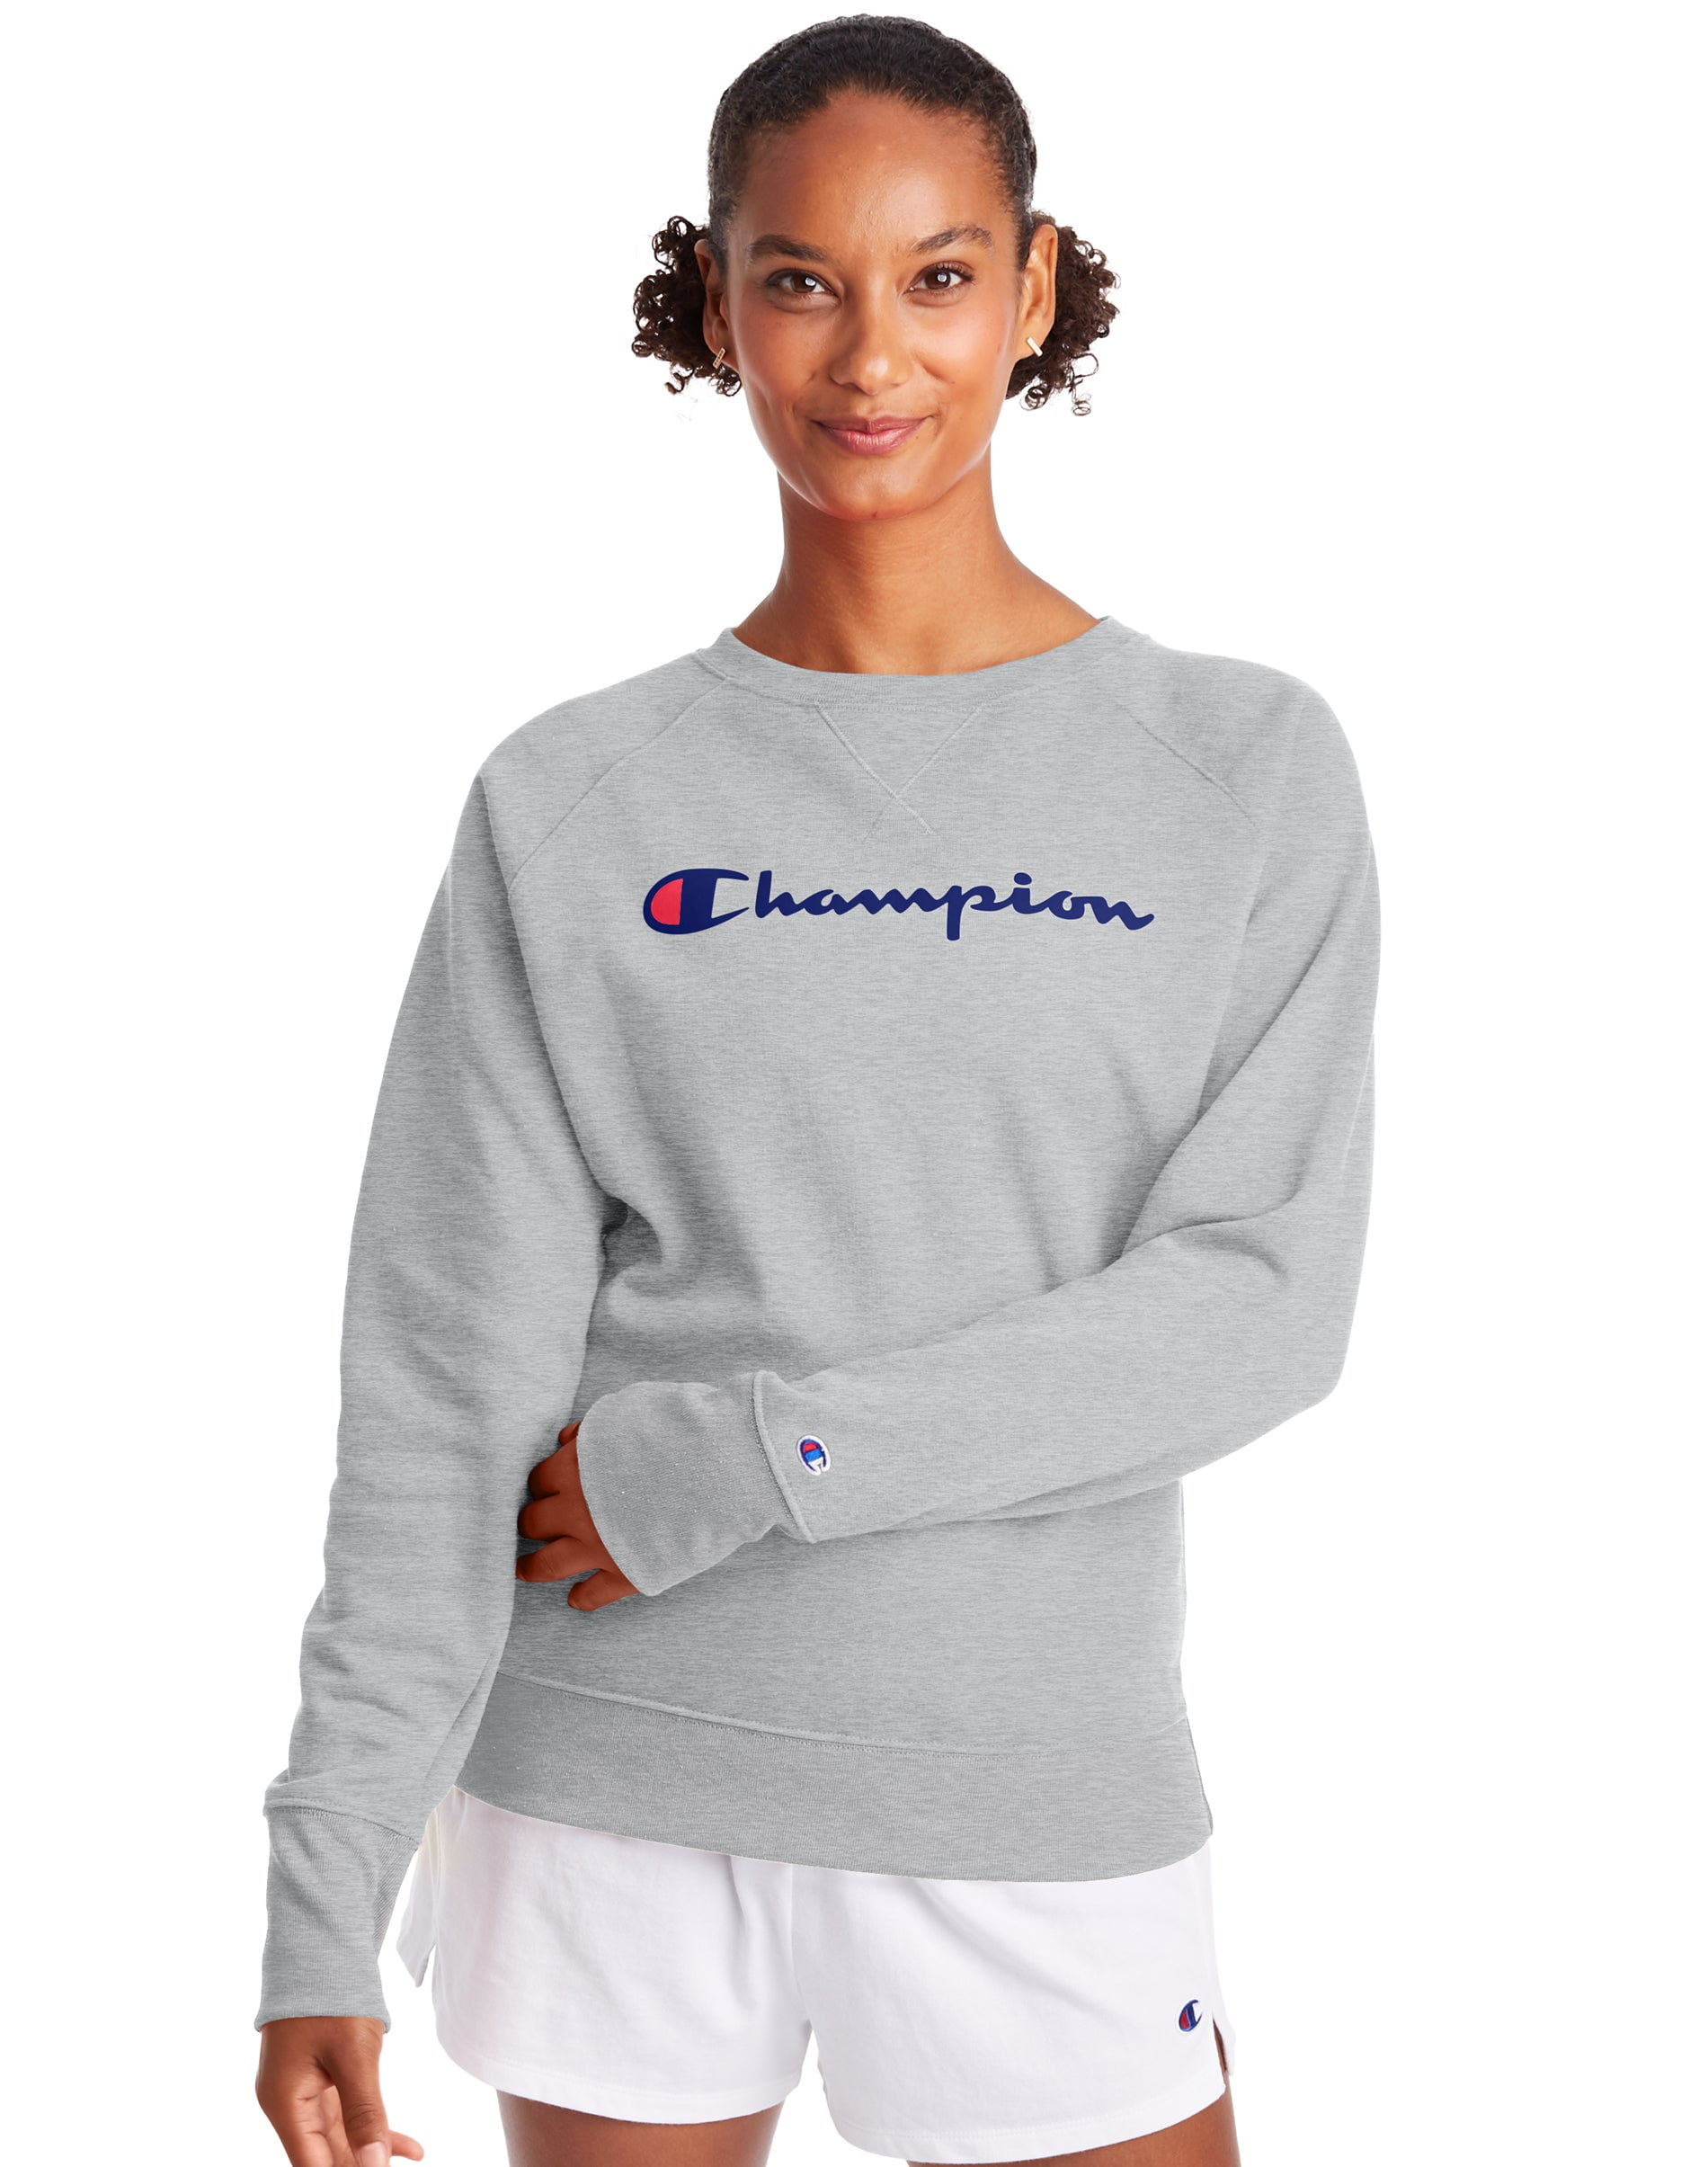 Champion Womens Powerblend Boyfriend Crew Sweatshirt